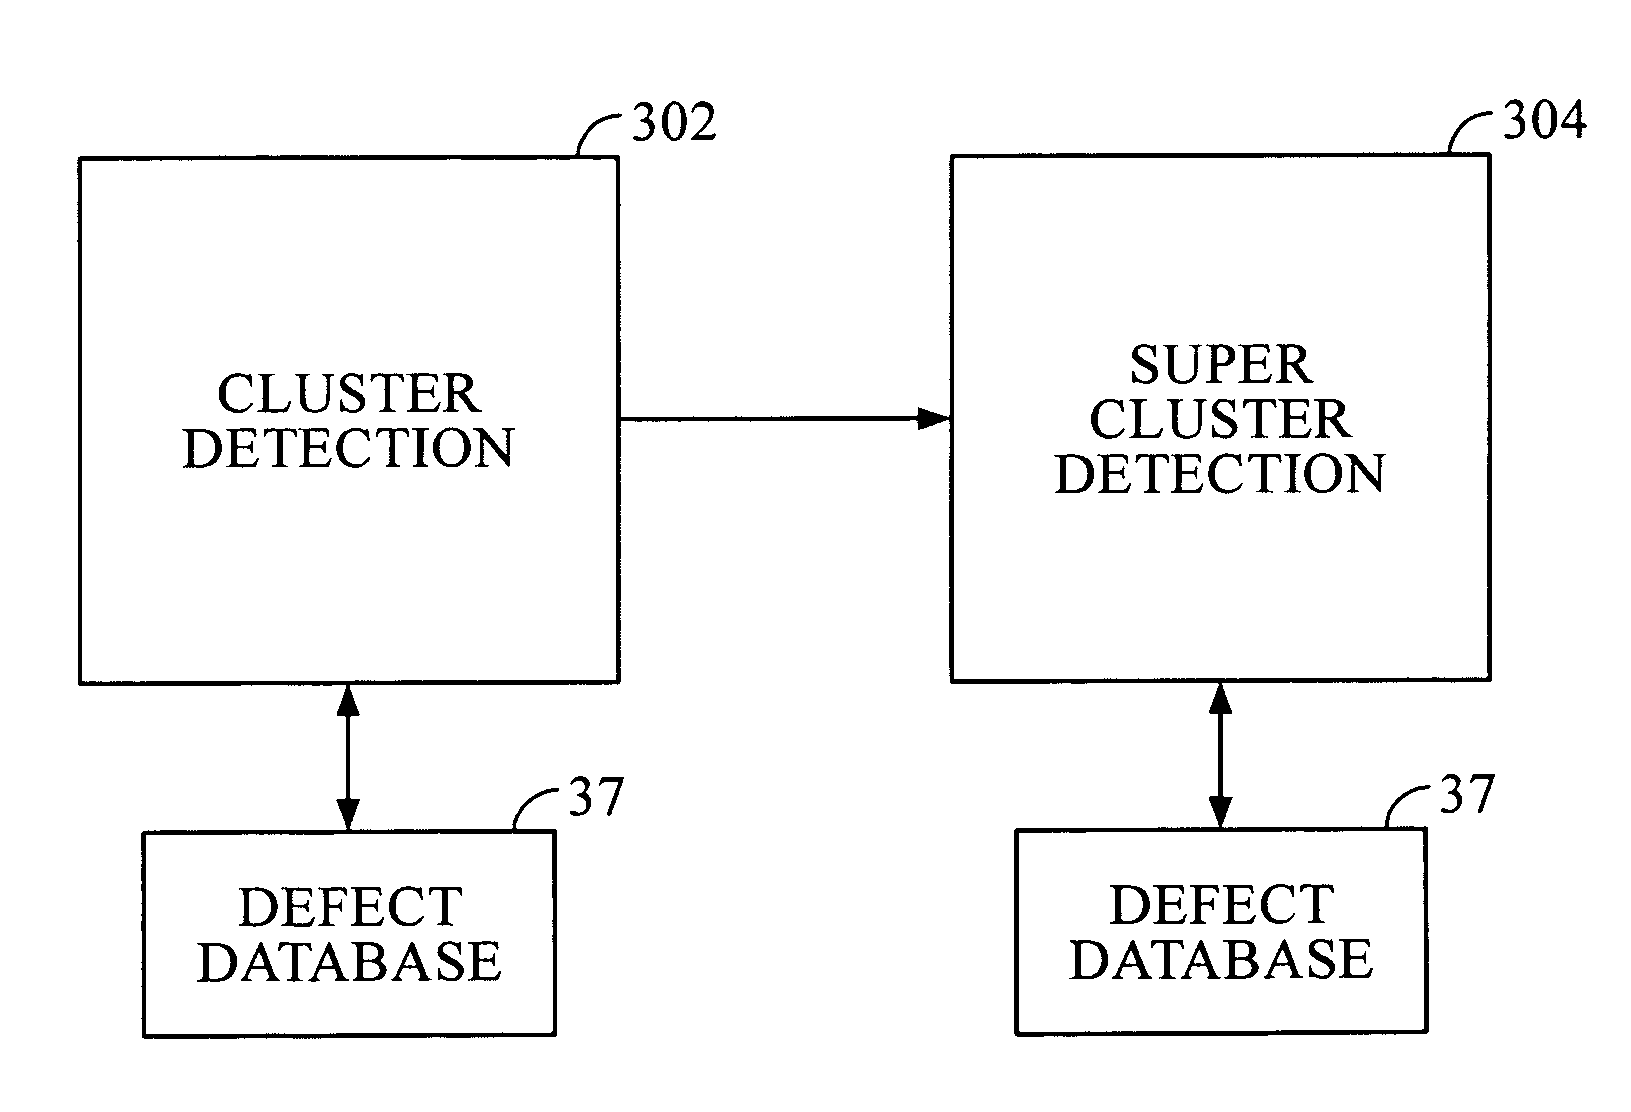 Cluster-based defect detection testing for disk drives